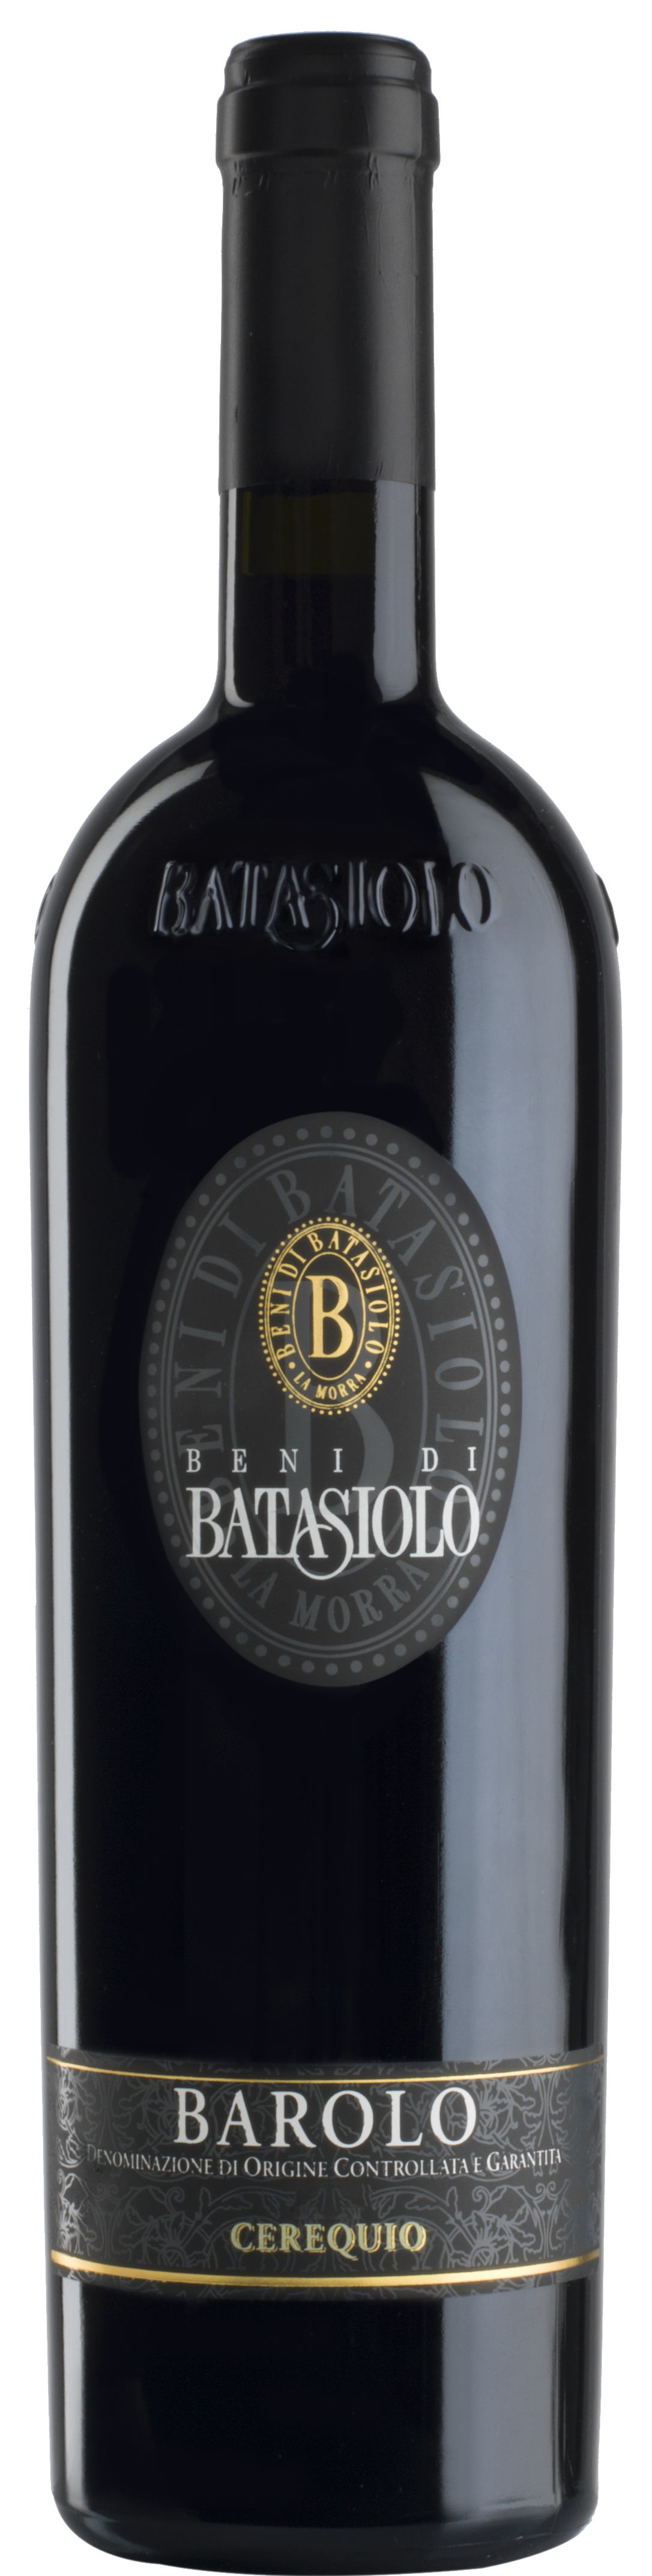 Batasiolo Vigneto Cerequio Barolo 2009 - Piemont - Rotwein trocken - 0,75l - 14,5% vol.